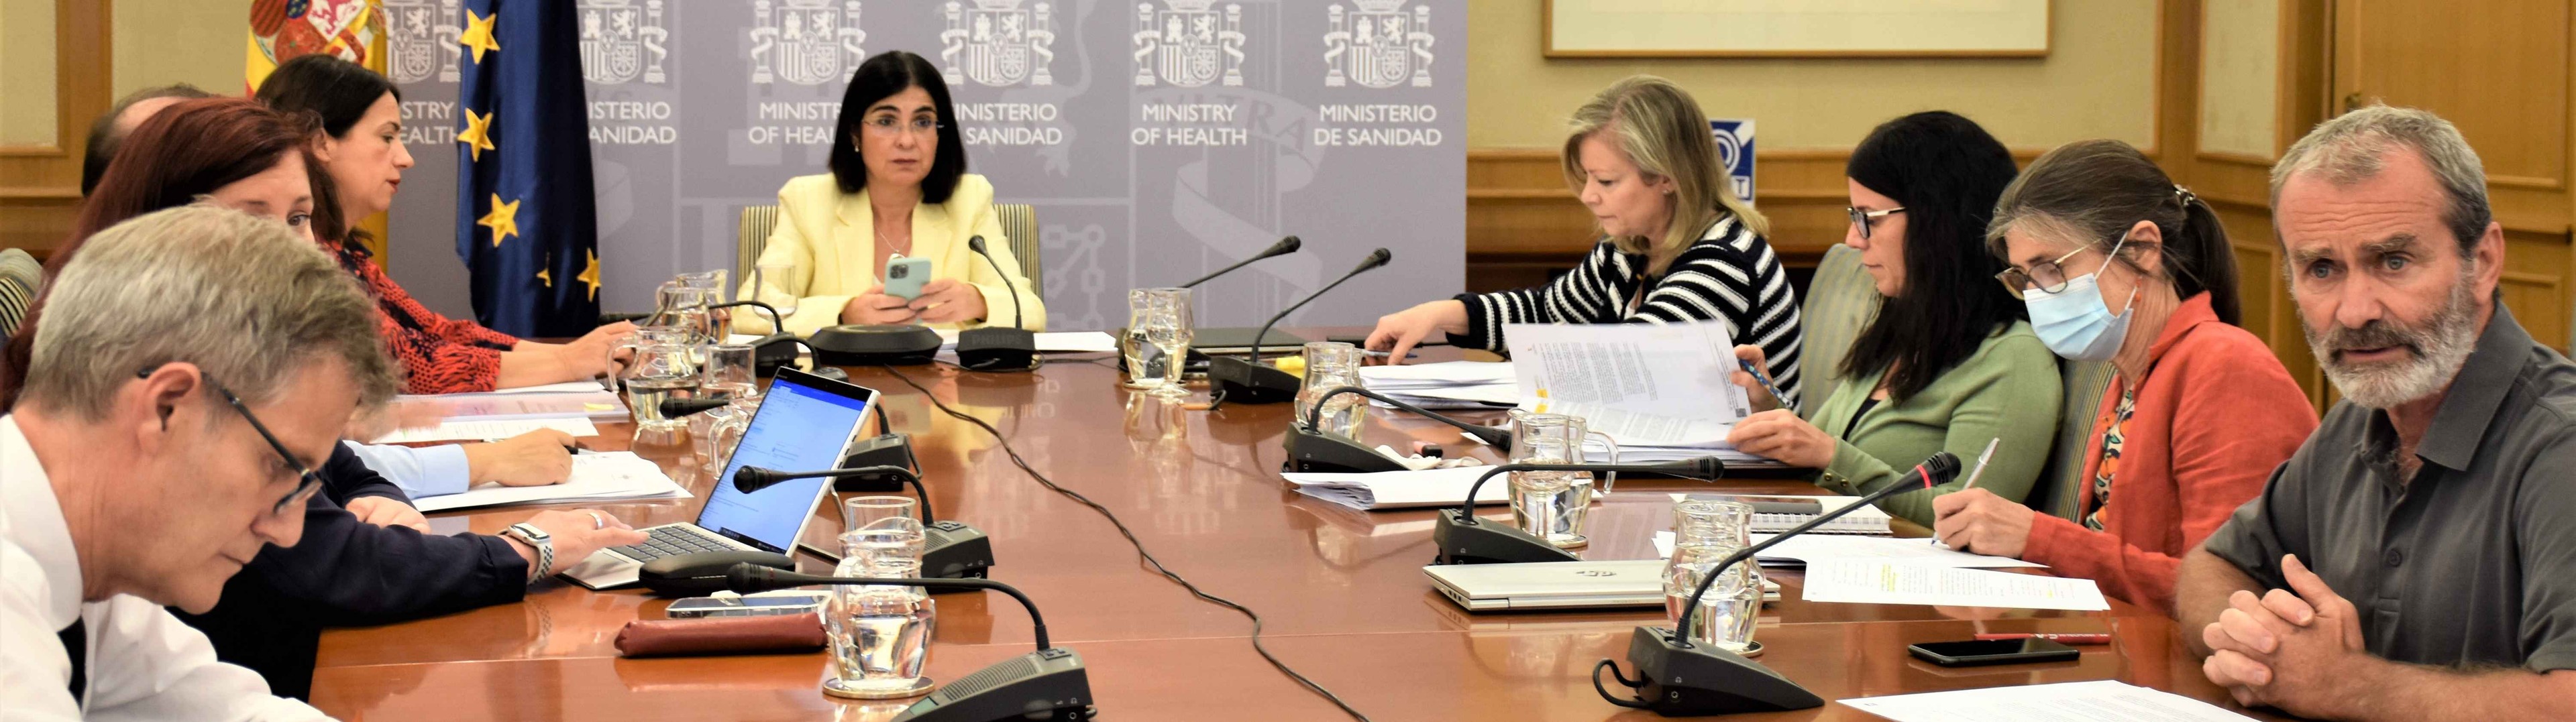 El Consejo Interterritorial aprueba la nueva Estrategia de Salud Pública 